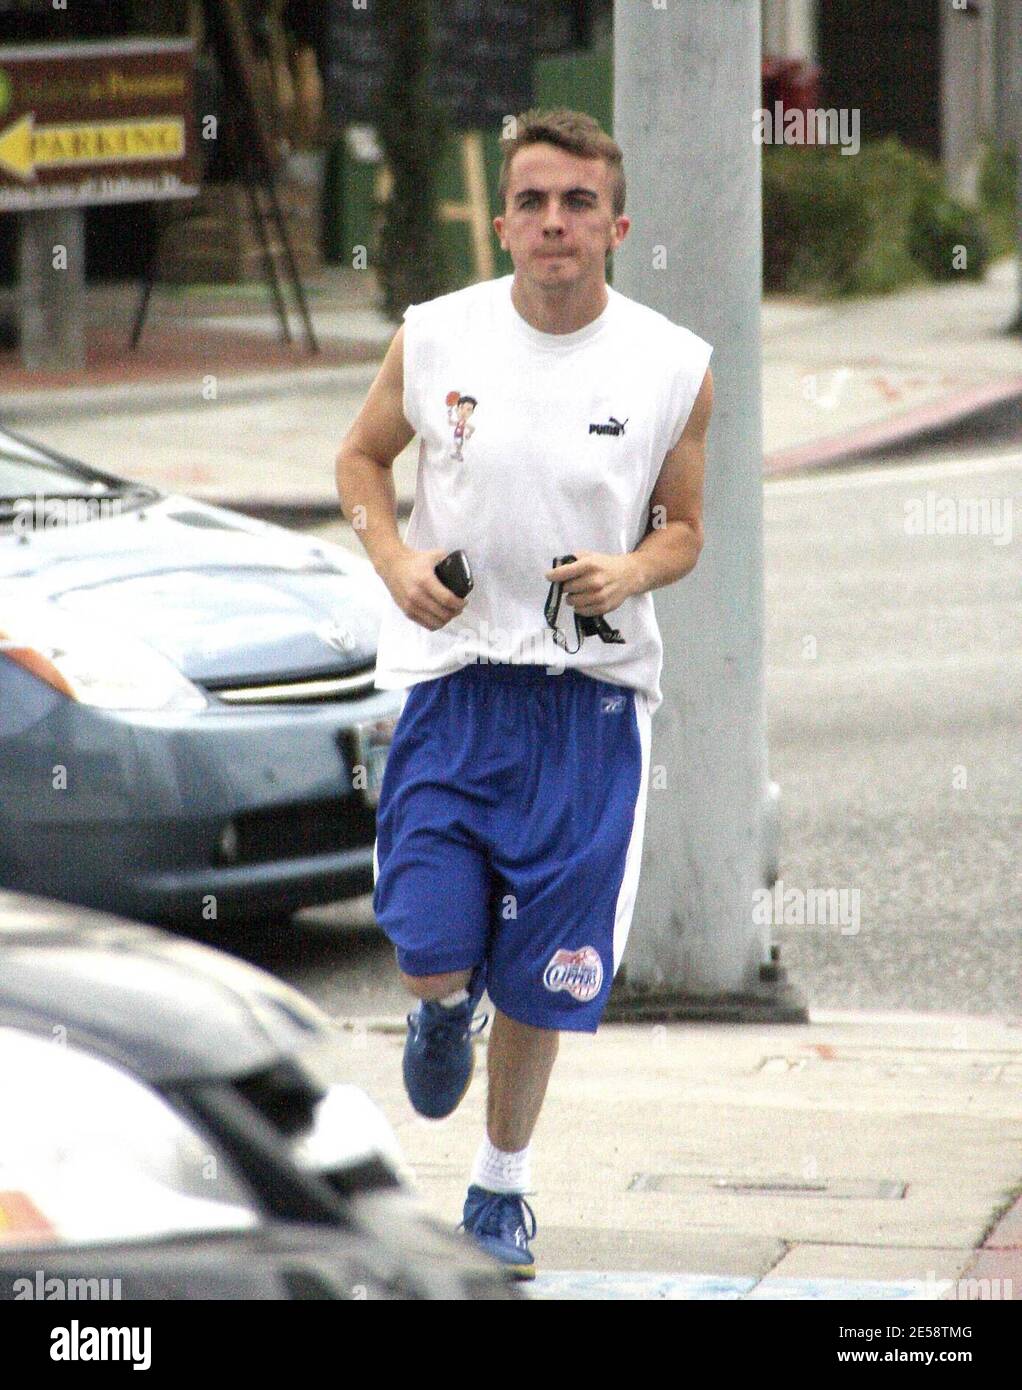 Exclusif !! Frankie Muniz est un zéro! Muniz portait un t-shirt personnalisé tout en faisant du jogging à la salle de gym. West Hollywood, Californie, 10/27/07. [[rac ral]] Banque D'Images